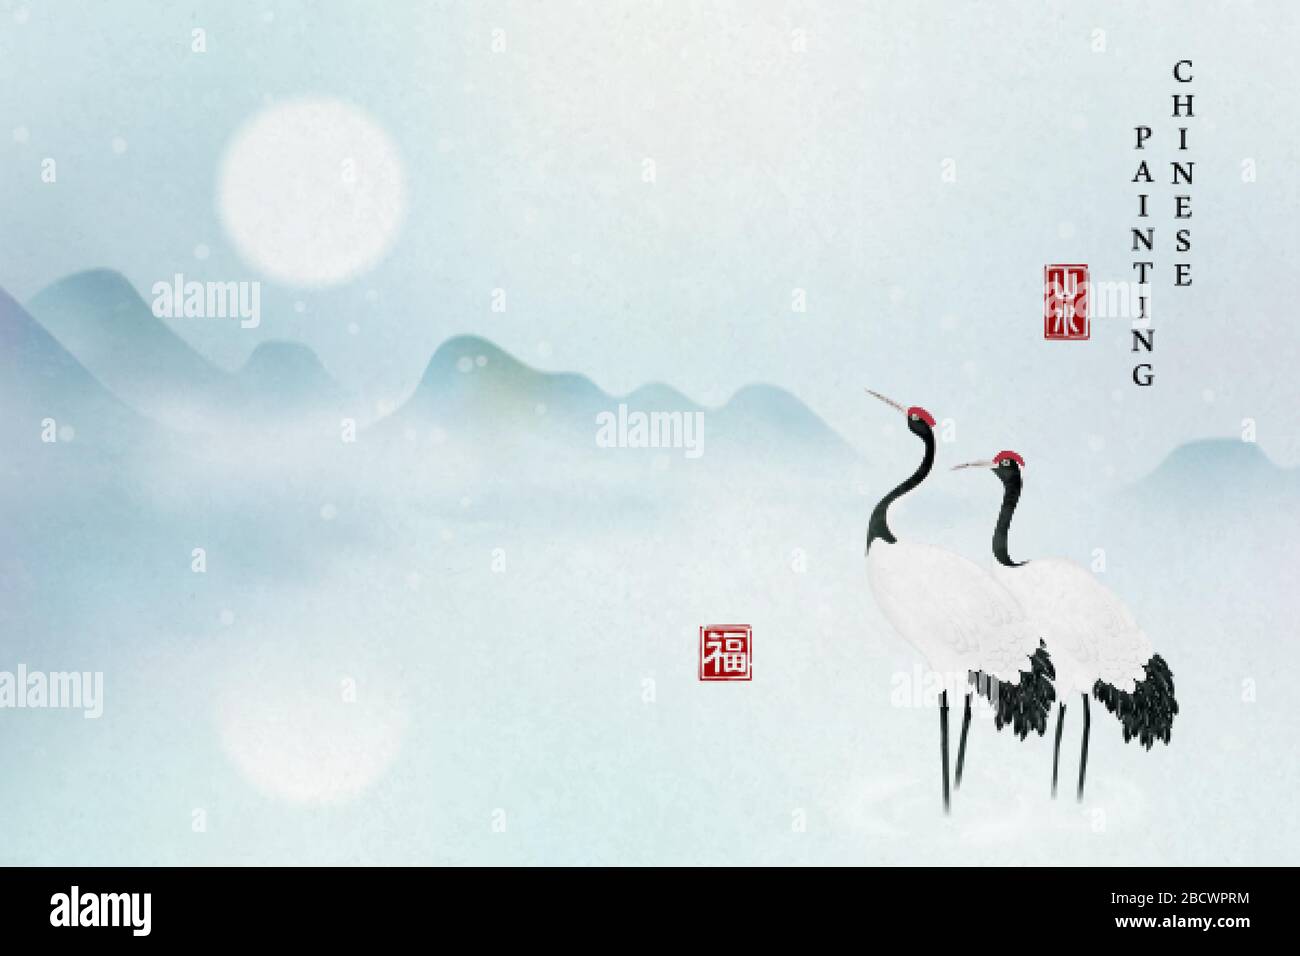 Encre chinoise peinture art fond élégant paysage tranquille vue de montagne pleine lune et grue chinoise oiseau debout sur le lac. Transla chinoise Illustration de Vecteur